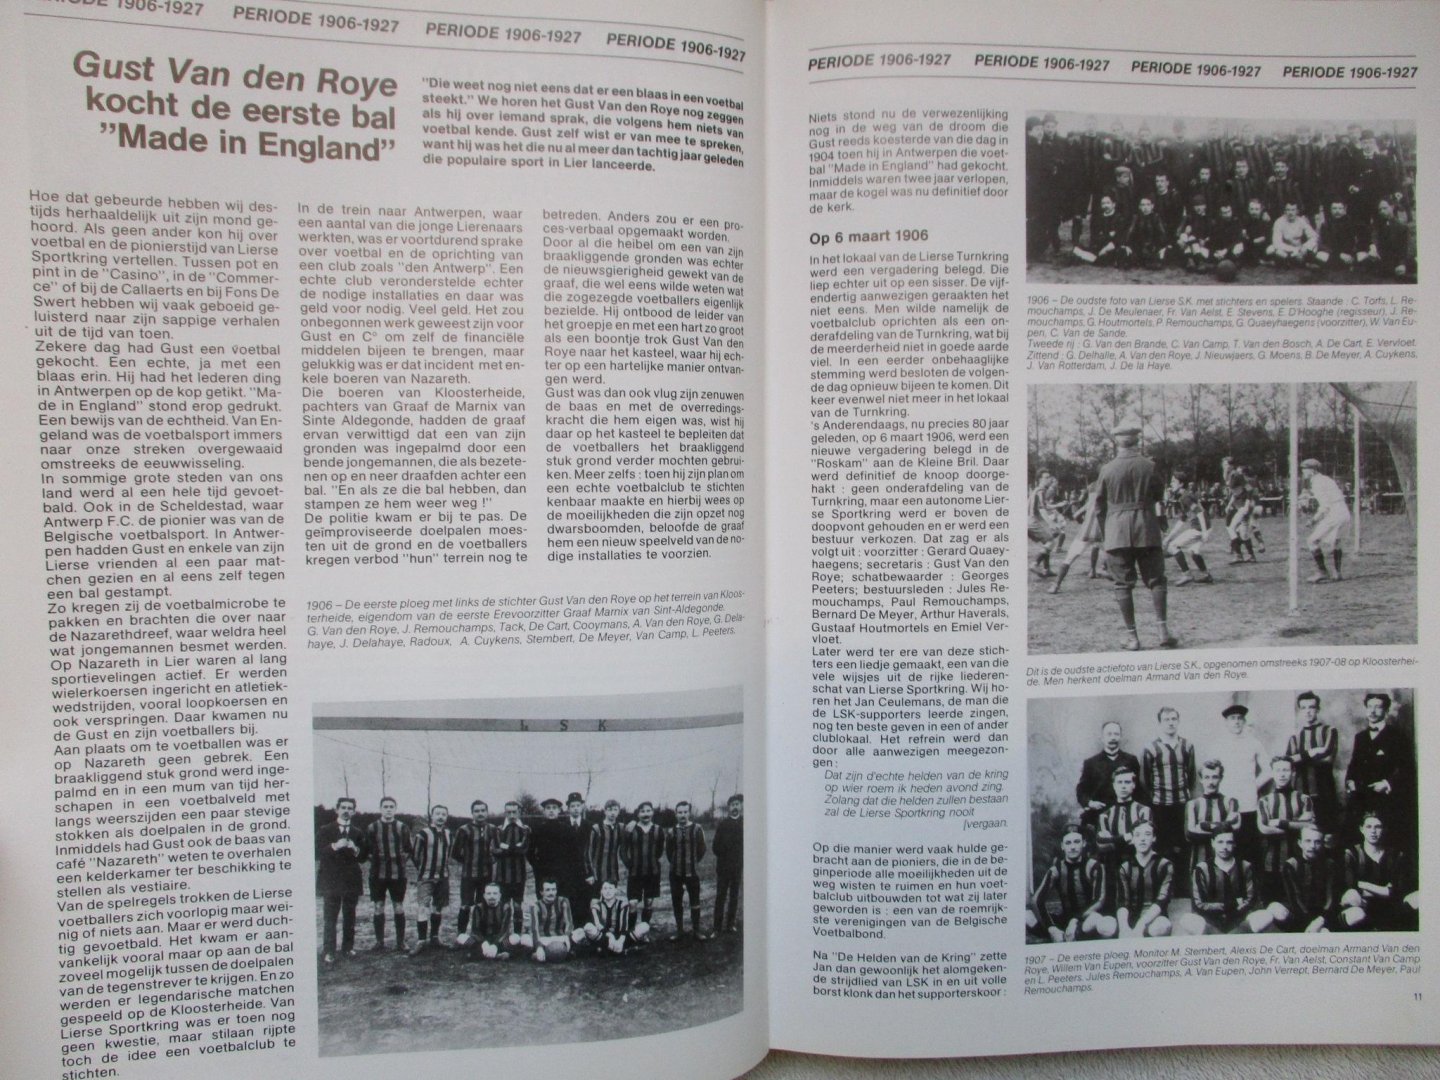 Geuens, Bob - 80 jaar goud-zwart. Koninklijke LIERSE Sportkring 1906-1986.